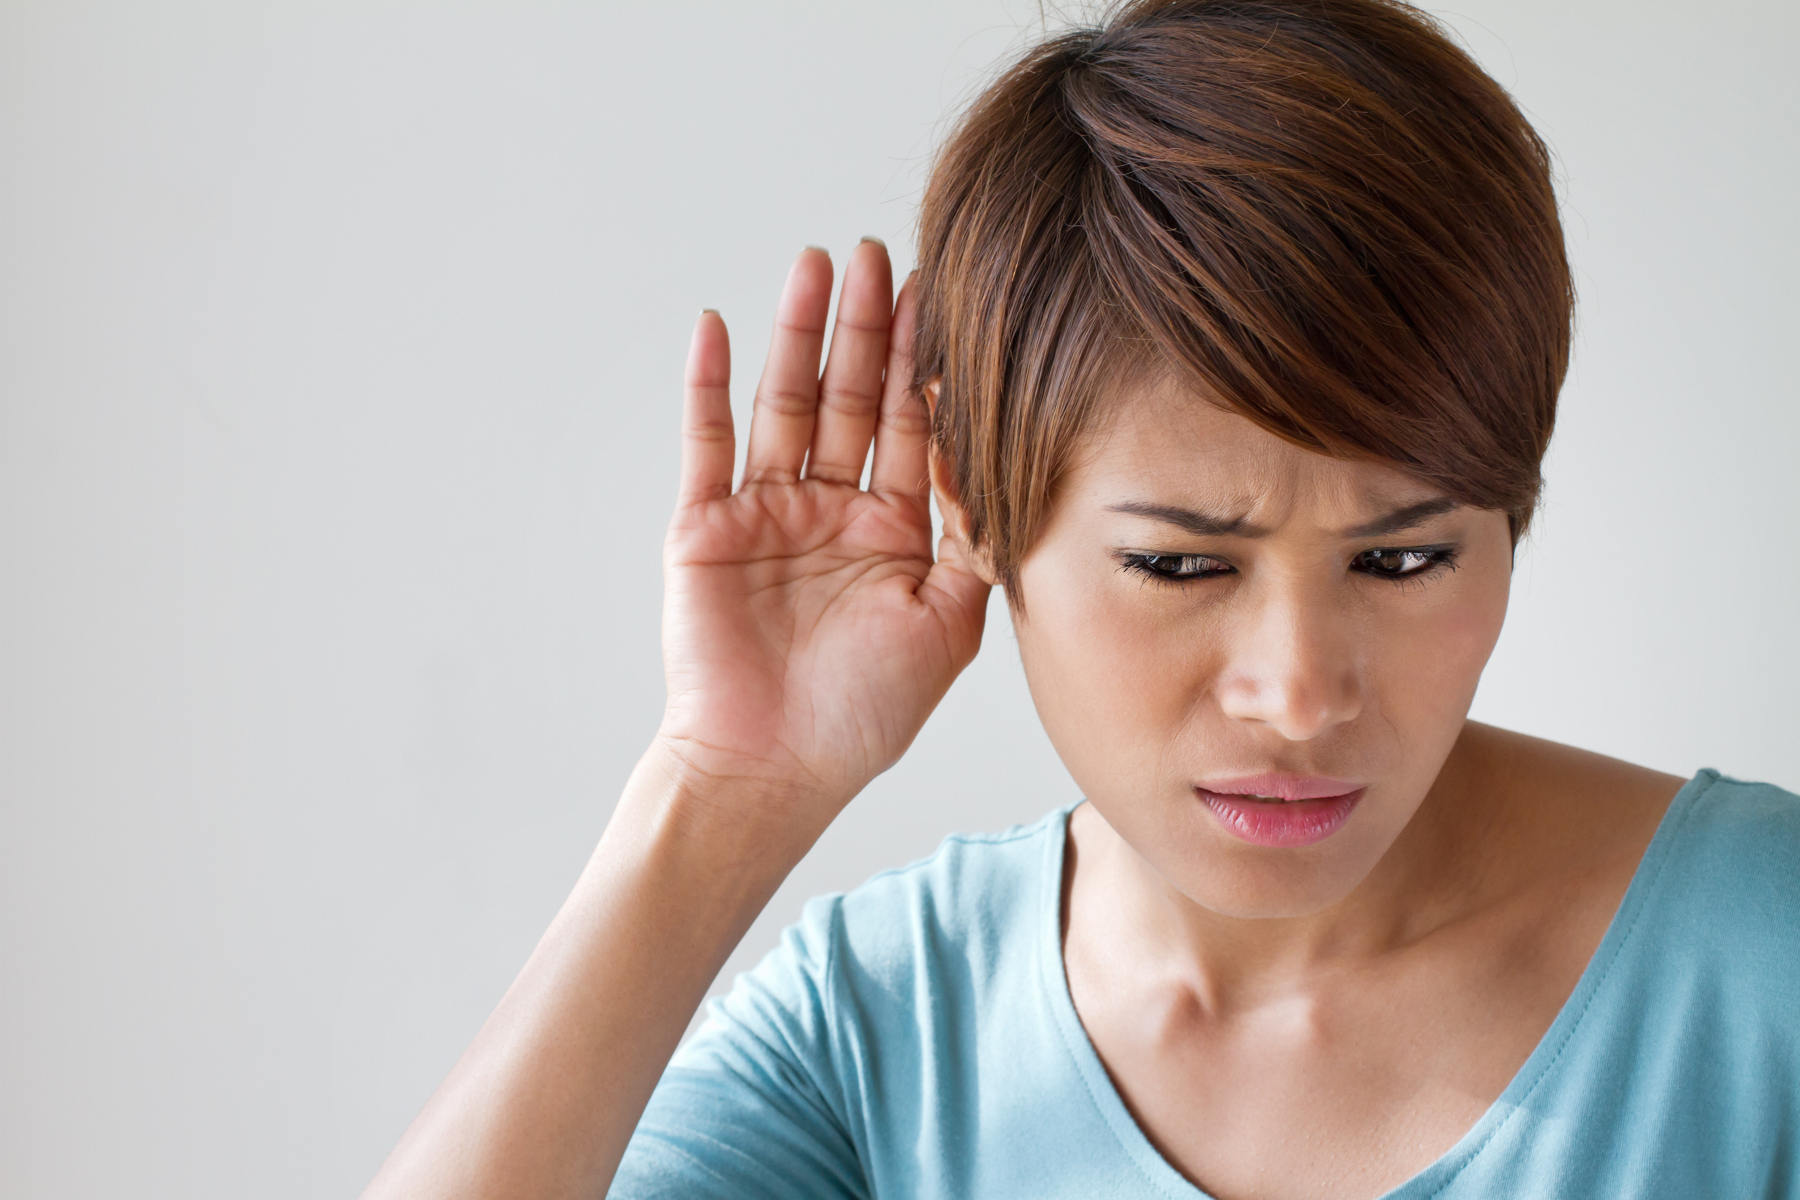 Αυτιά: Πώς πρέπει να φροντίζετε την υγεία των αυτιών σας;